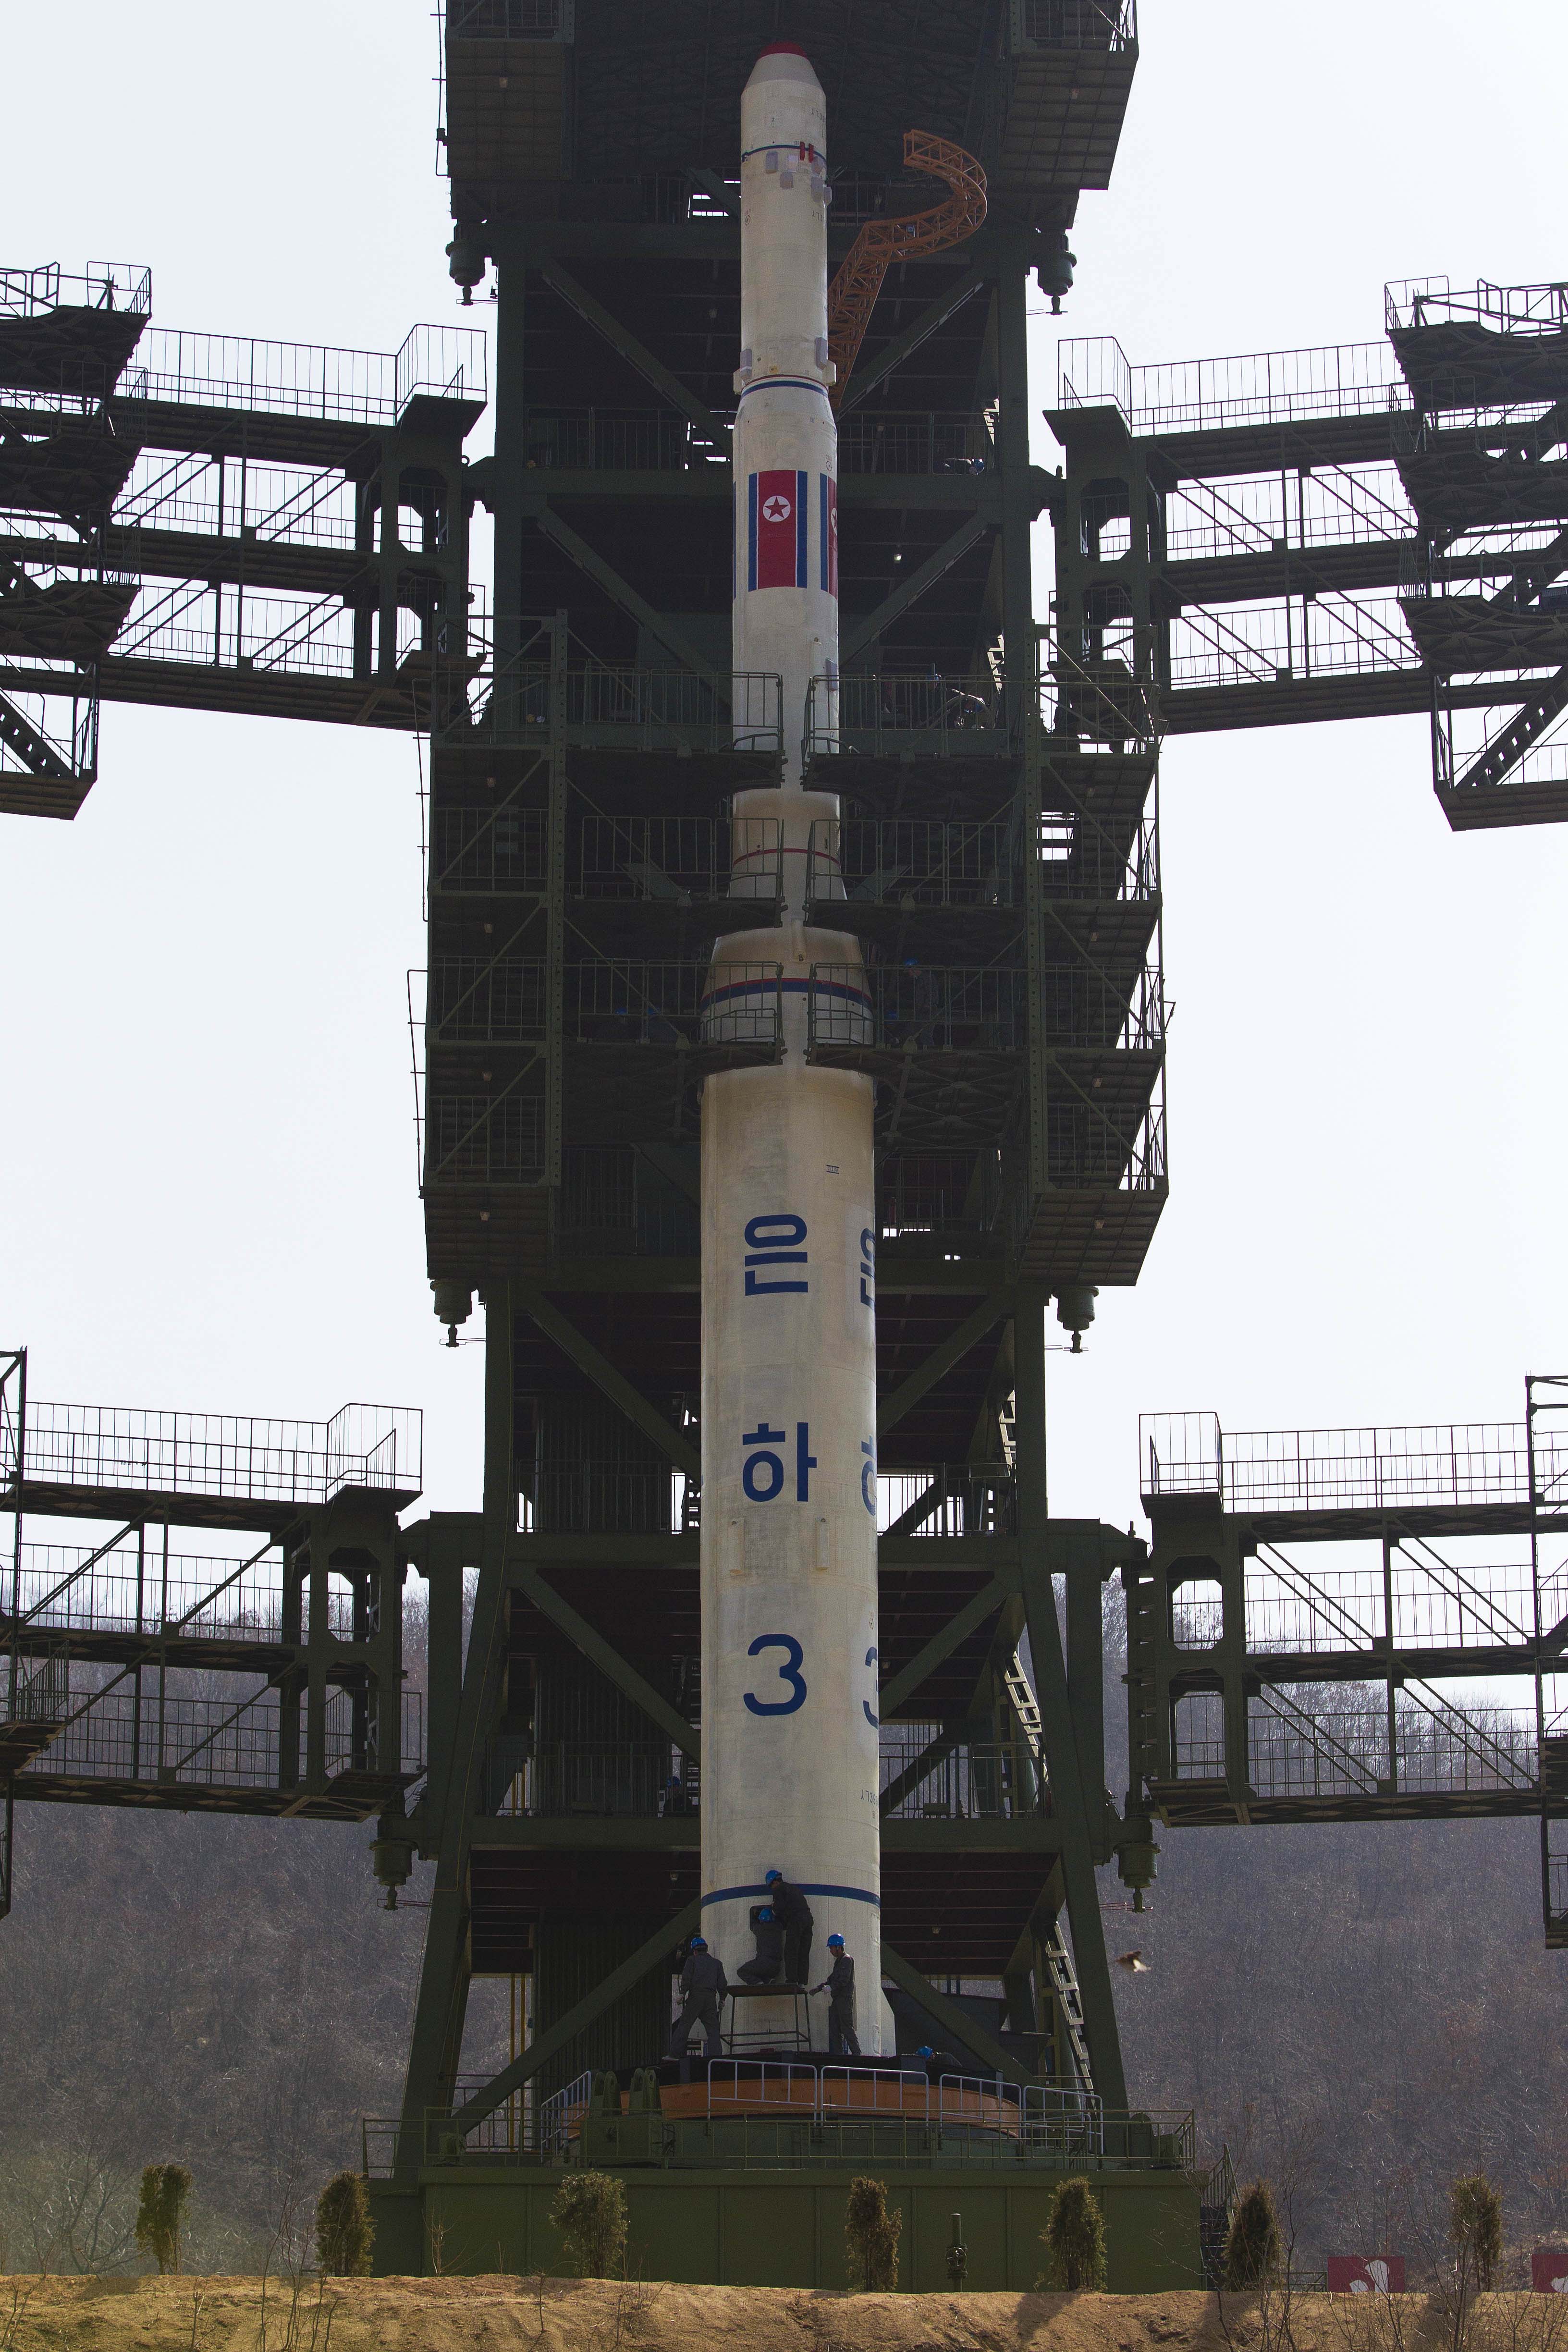 Raketen nådde 12-15 mil upp i luften innan den kraschade.